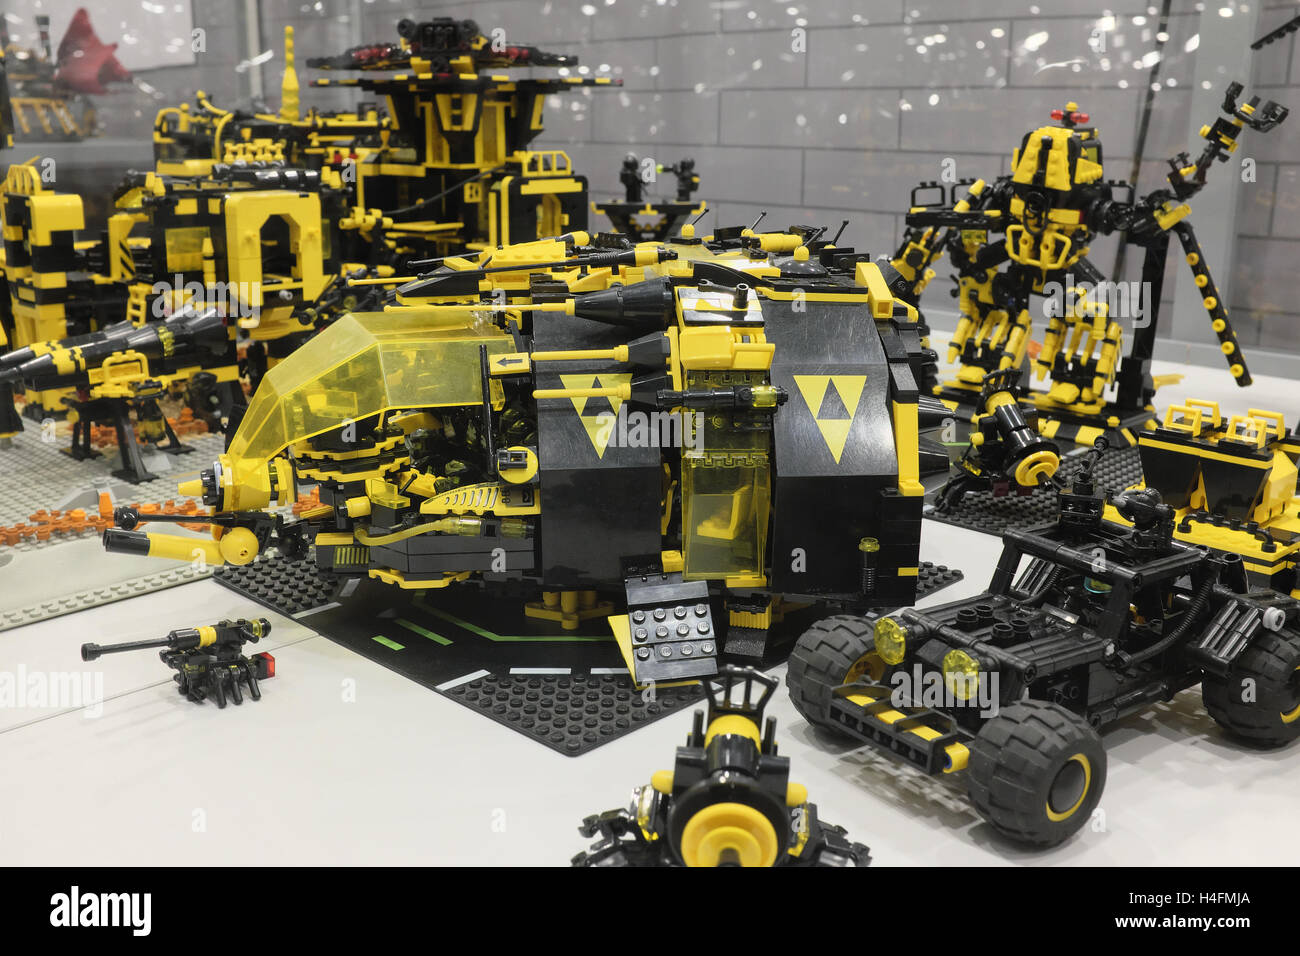 LEGO Bausteine Raum Maschinen auf der Expo, Rzeszów, Polen Stockfotografie  - Alamy